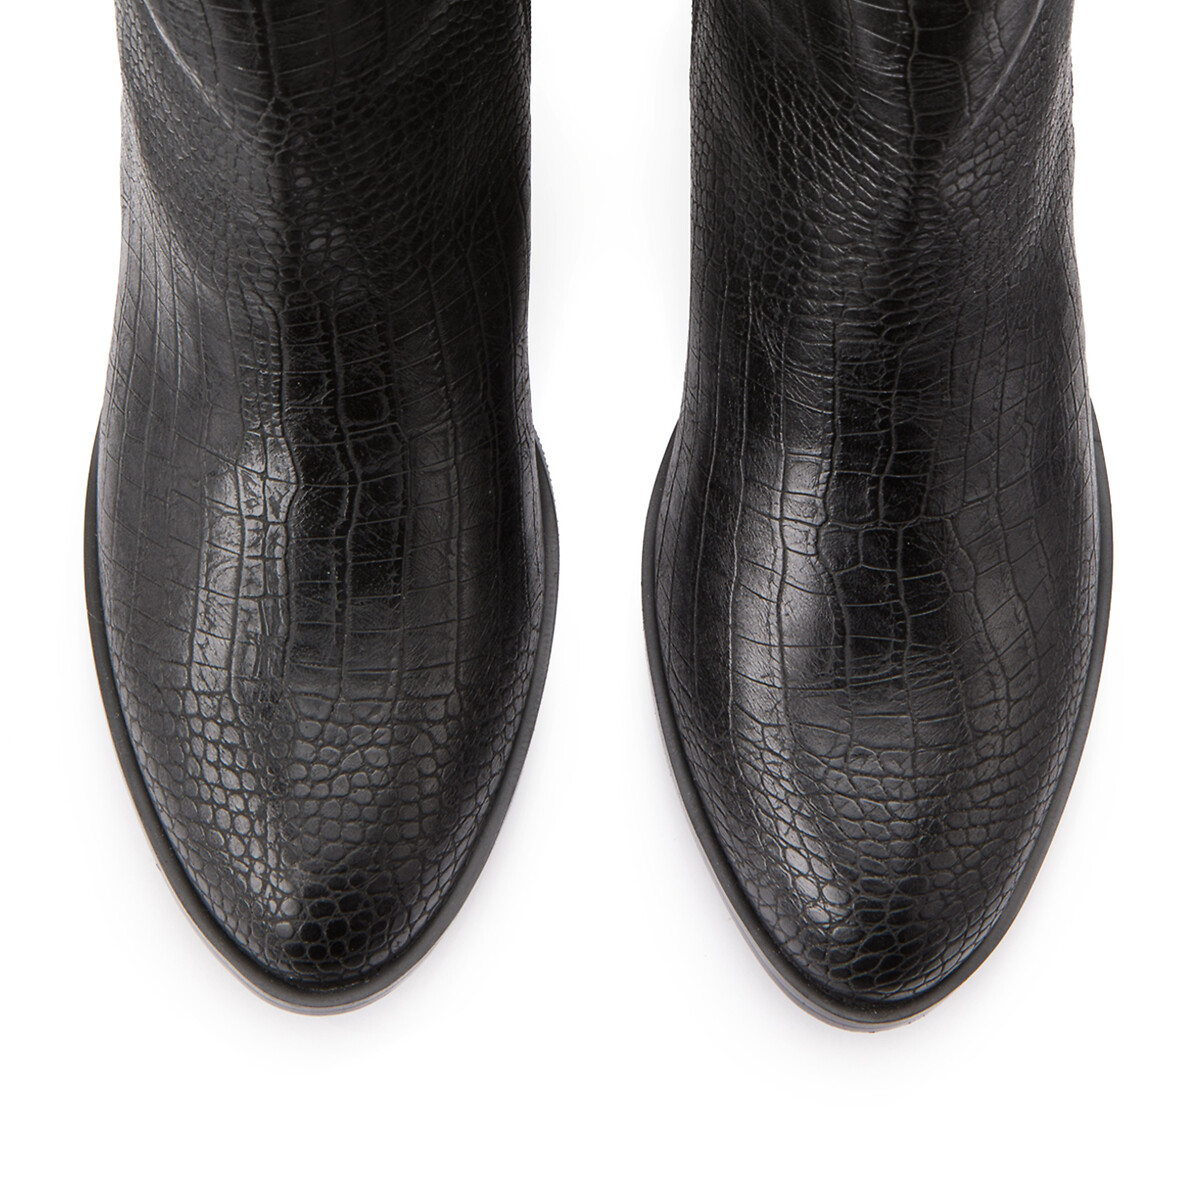 Ботинки LaRedoute На молнии широкий каблук 5 см эффект крокодиловой кожи 42 черный, размер 42 - фото 3